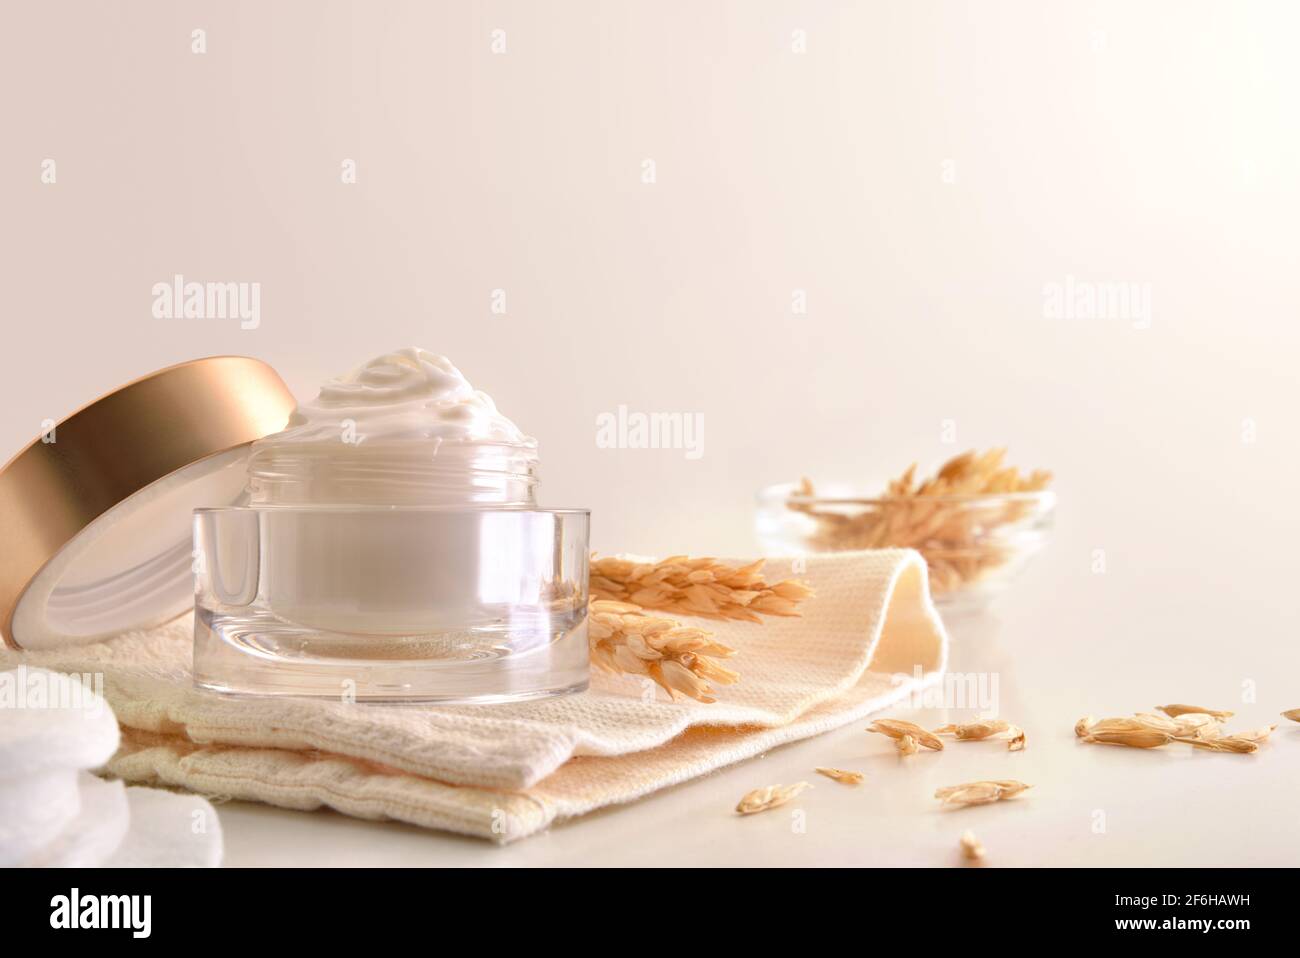 Crème hydratante pour le visage d'avoine dans un pot en verre avec des pointes sur la table blanche pour le traitement de l'acné. Vue avant. Composition horizontale. Banque D'Images